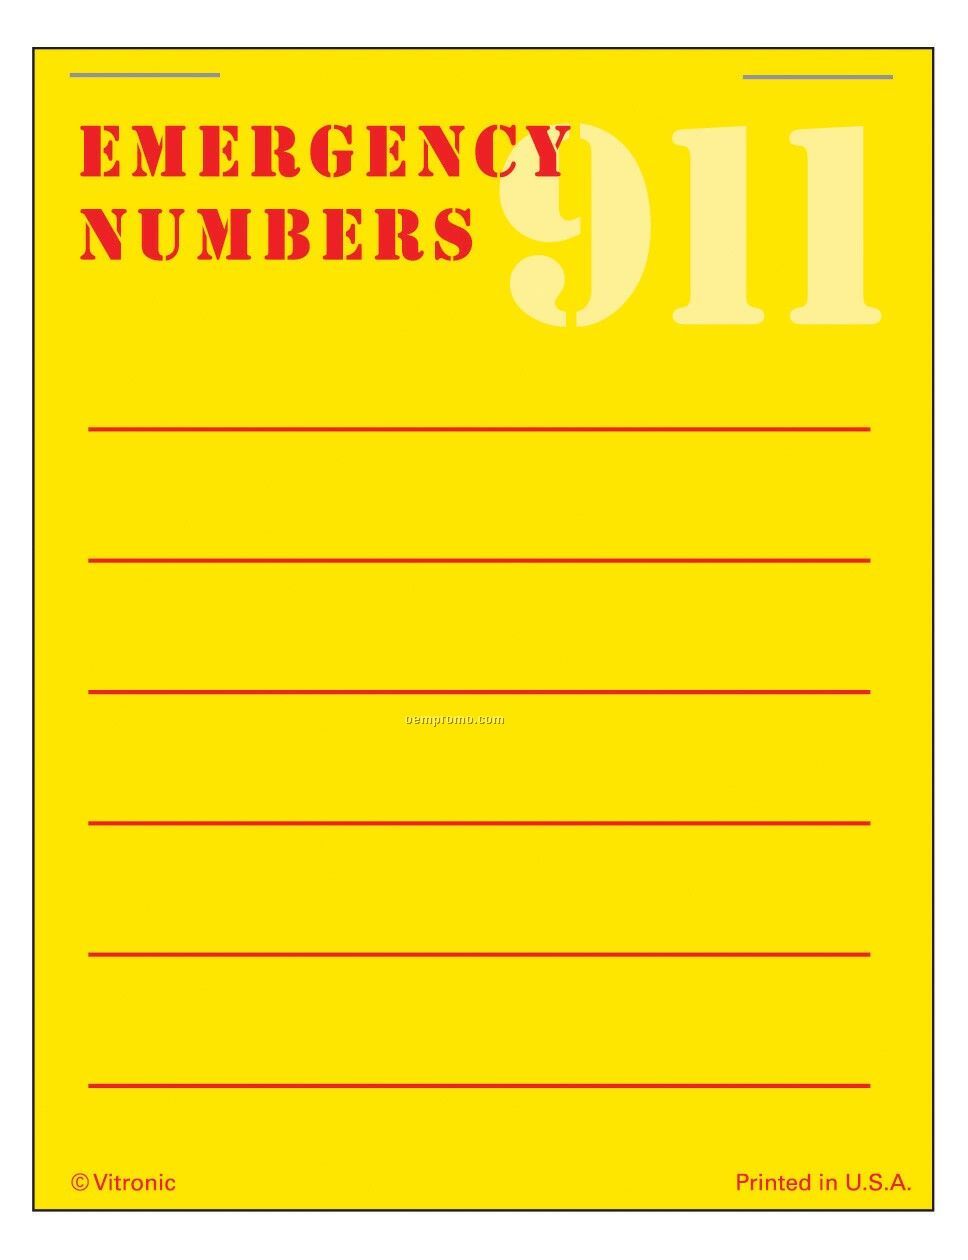 Super Size Emergency Number List Press-n-stick Calendar Pad (After 8/1/11)